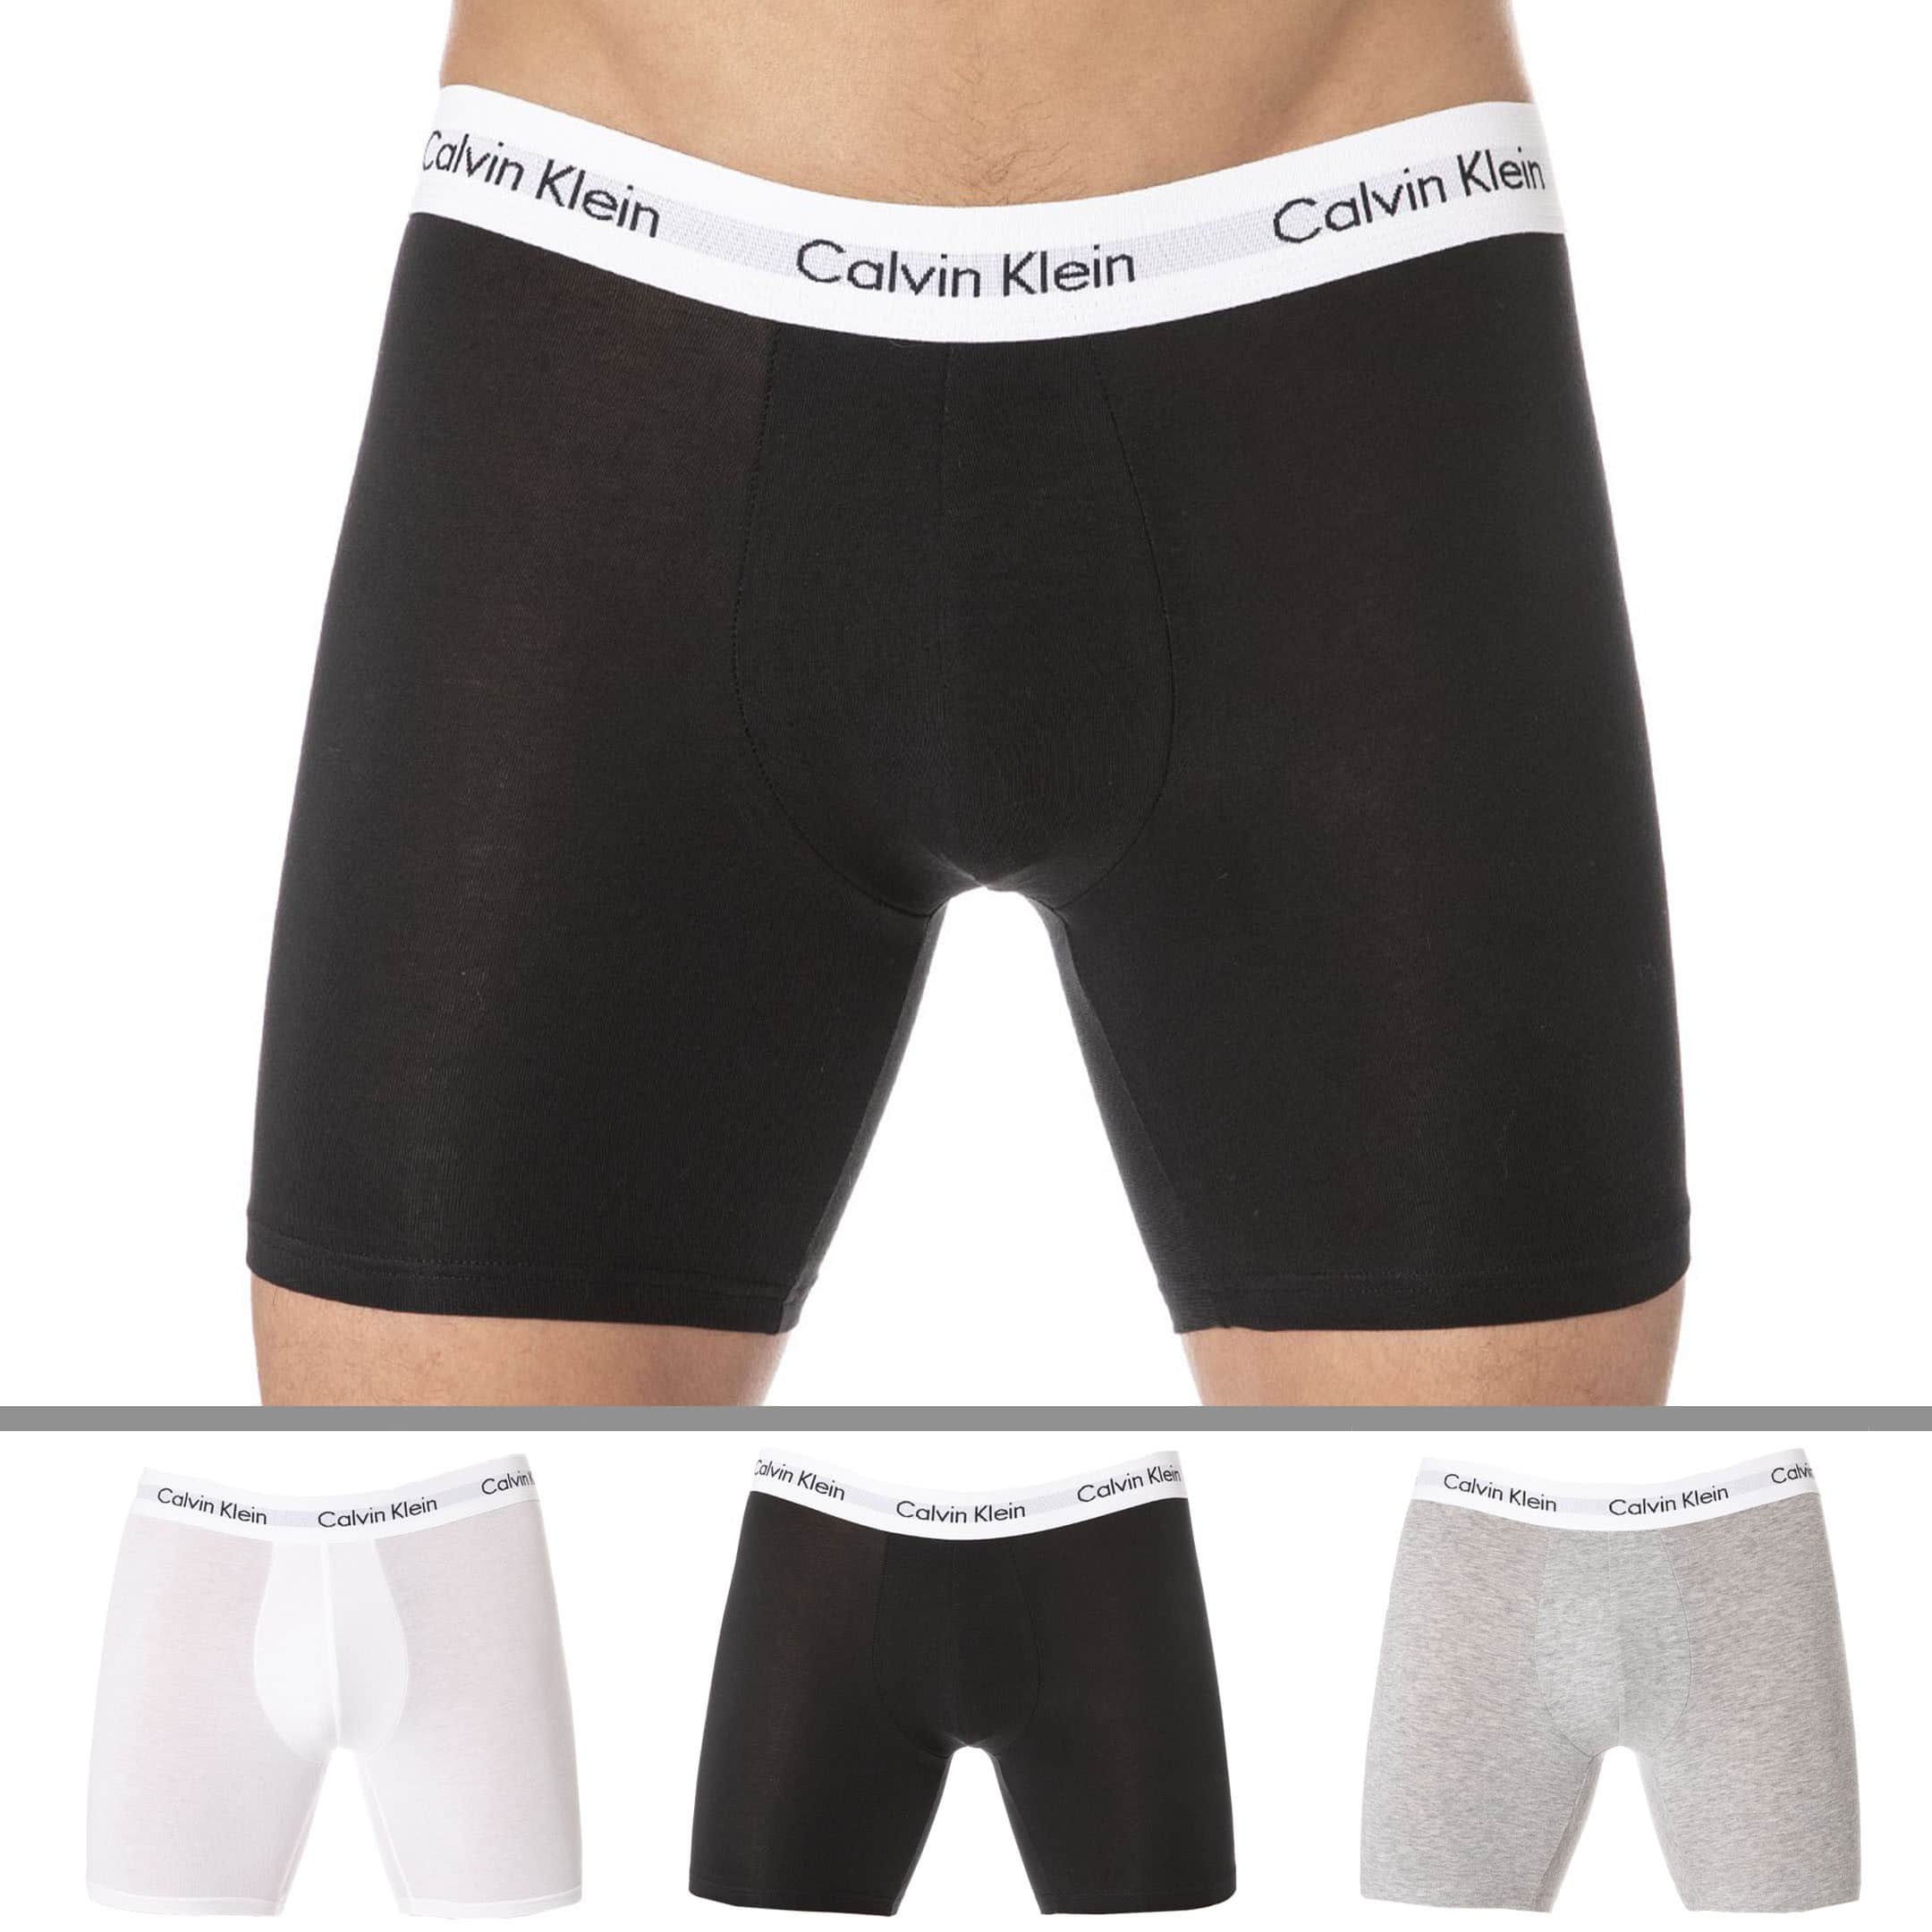 Onbevreesd Verbergen achterstalligheid Calvin Klein 3-Pack Cotton Stretch Long Leg Boxer Briefs - Black - White -  Grey